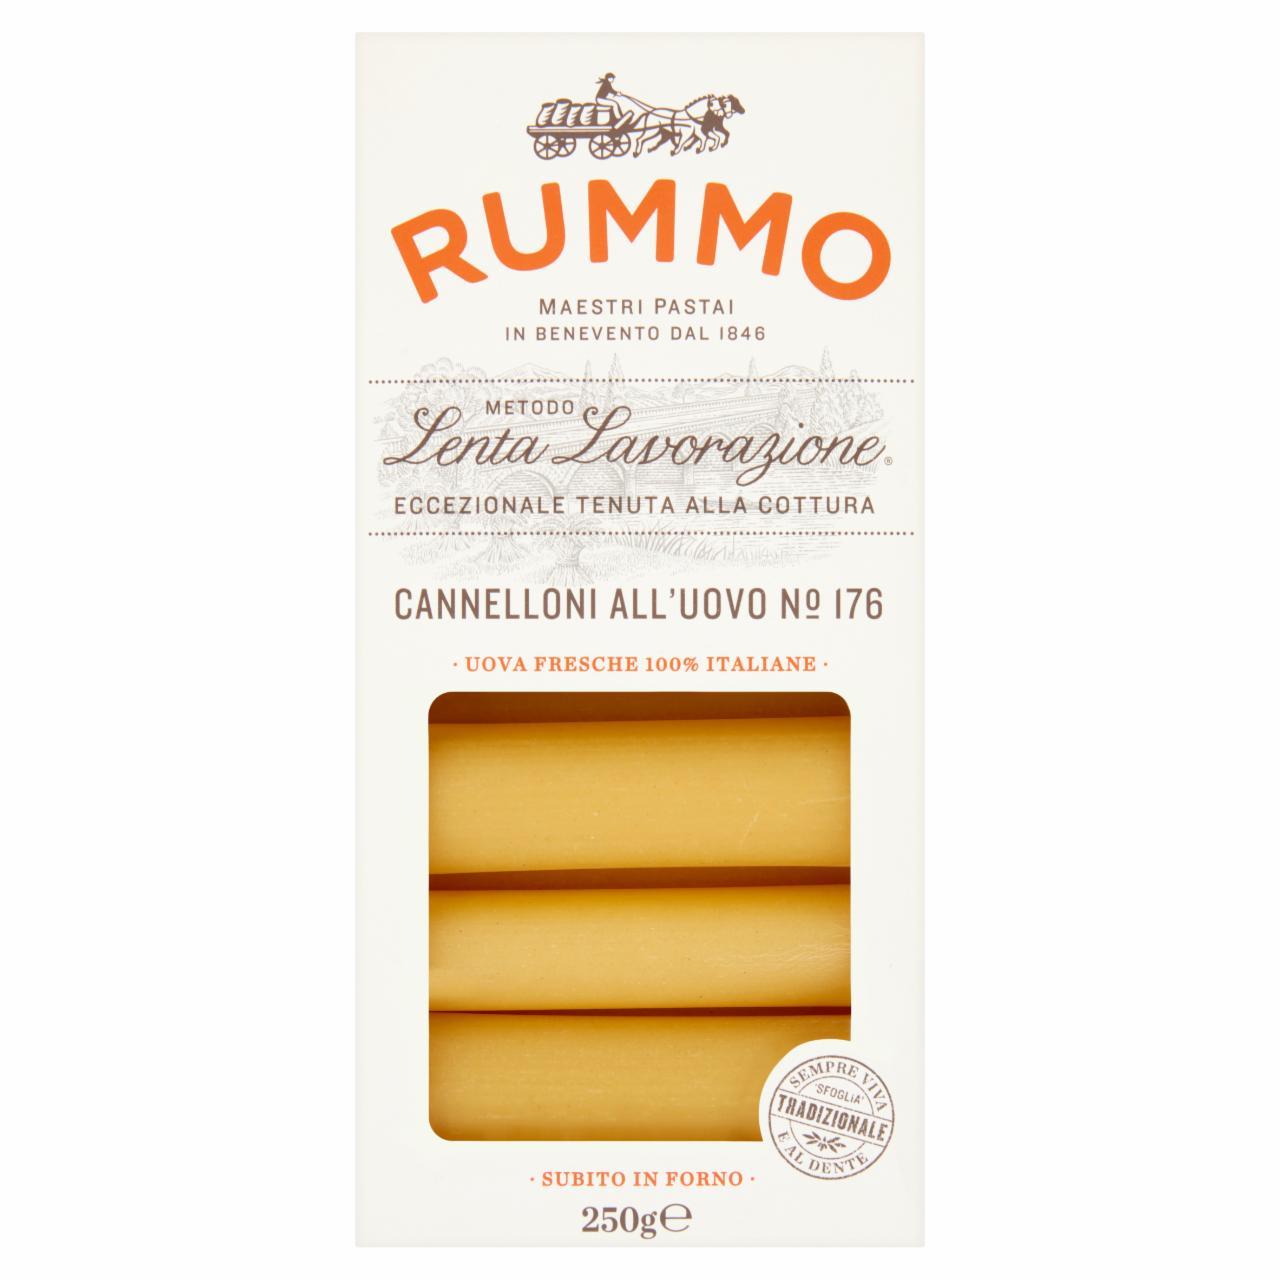 Képek - Rummo négytojásos durum cannelloni száraztészta 250 g